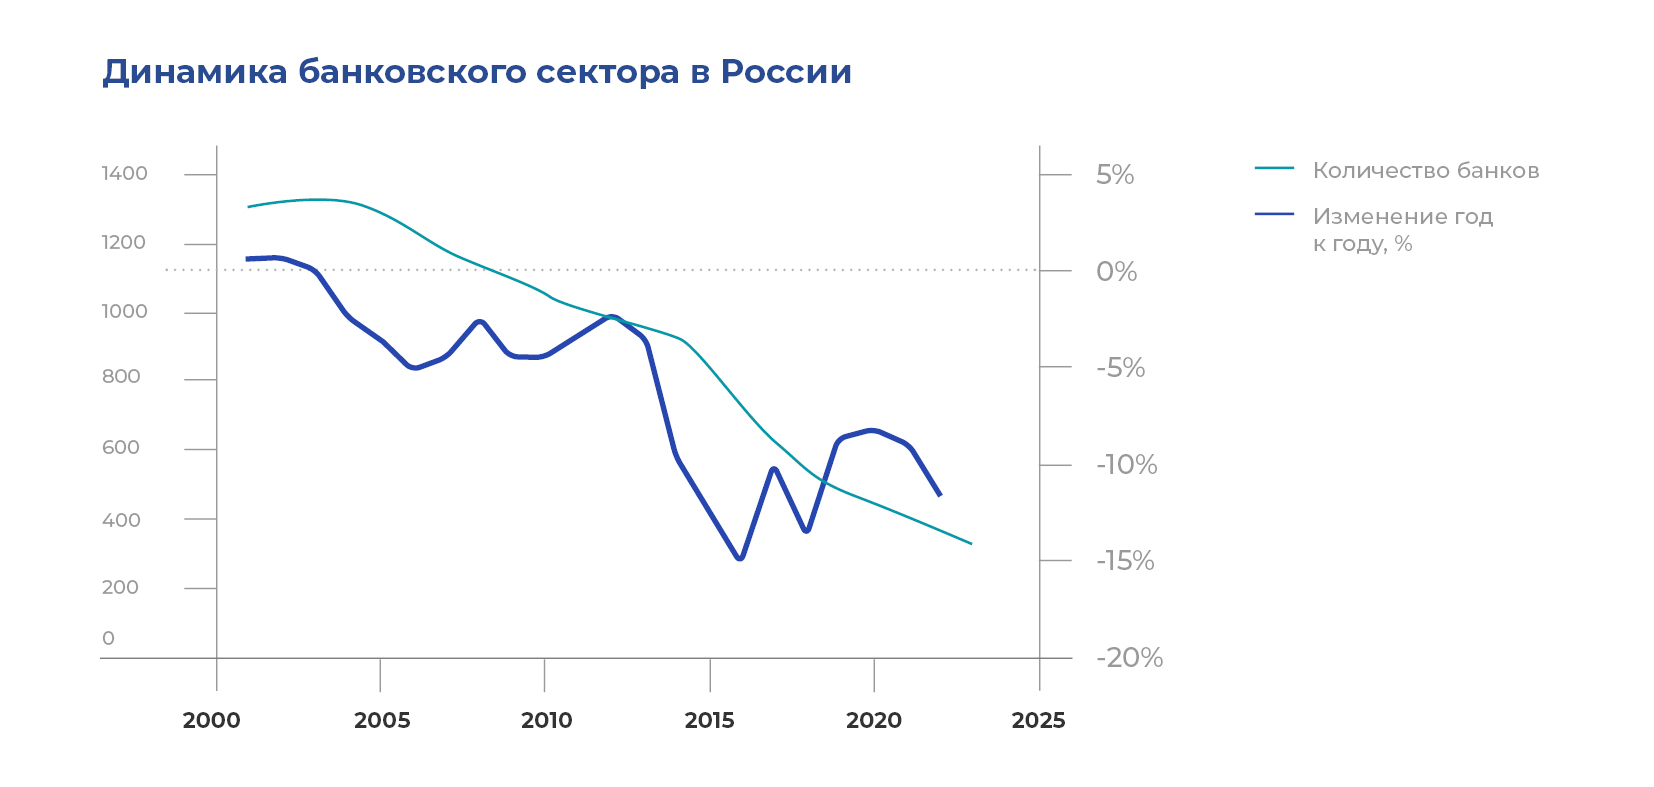 Динамика банковского сектора в России